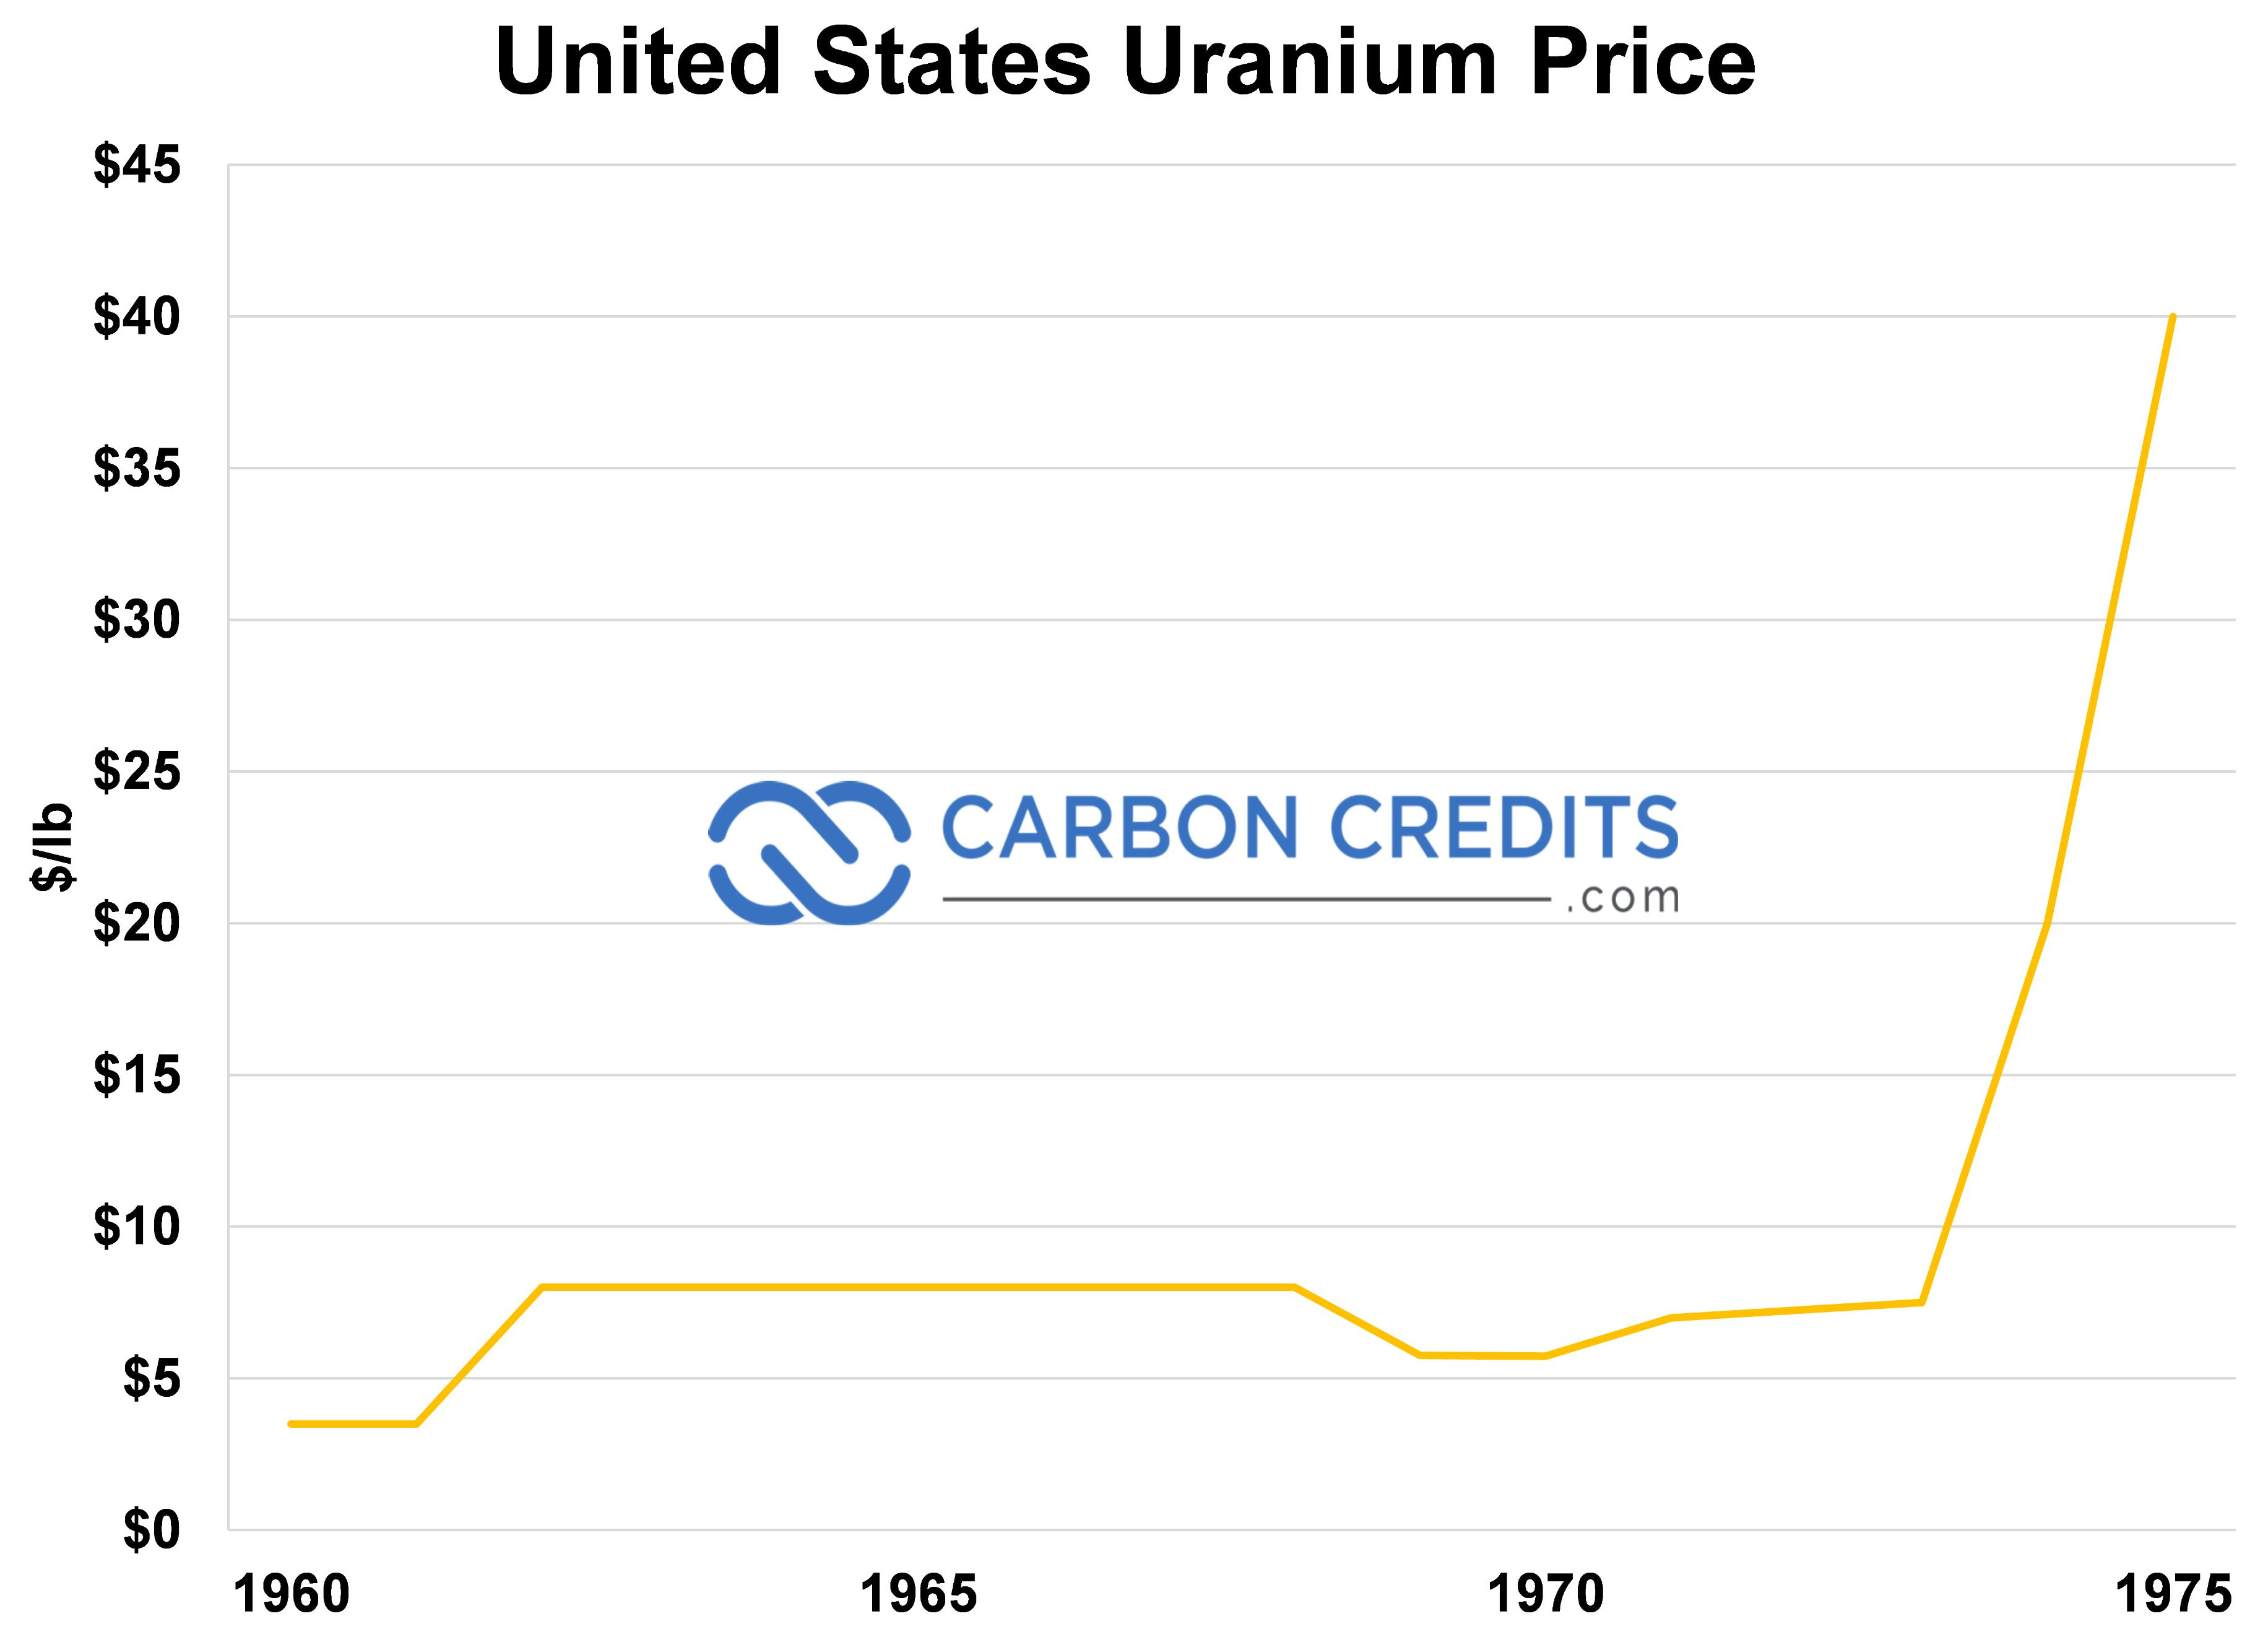 ایک لائن گراف کاربن کریڈٹ کی قیمت اور ریاستہائے متحدہ یورینیم کی قیمت دکھا رہا ہے۔